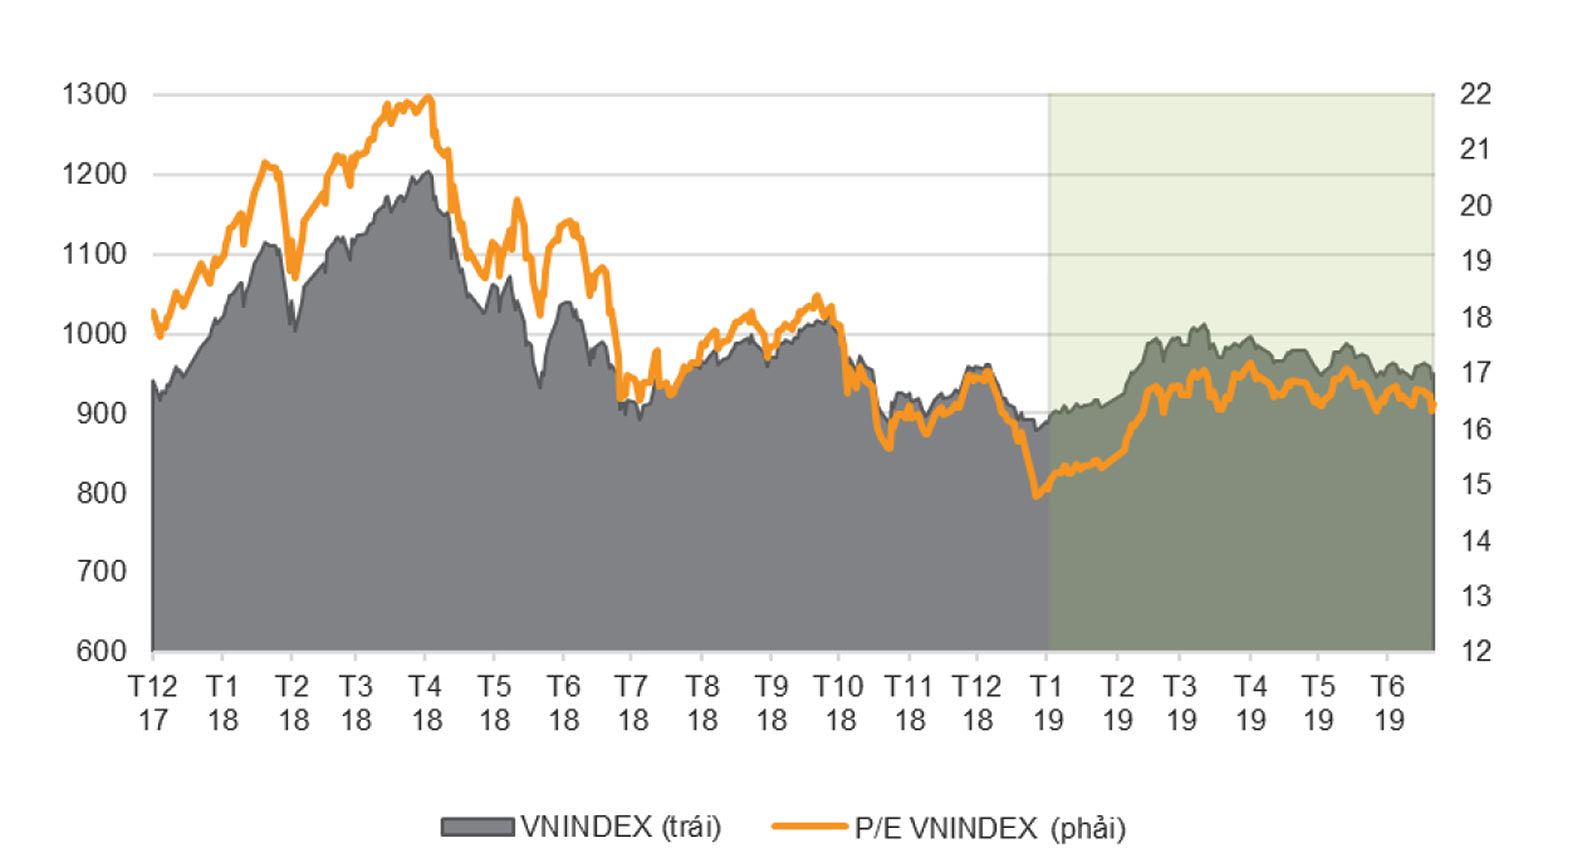 Vn-Index đi ngang kể từ cuối tháng 2/2019